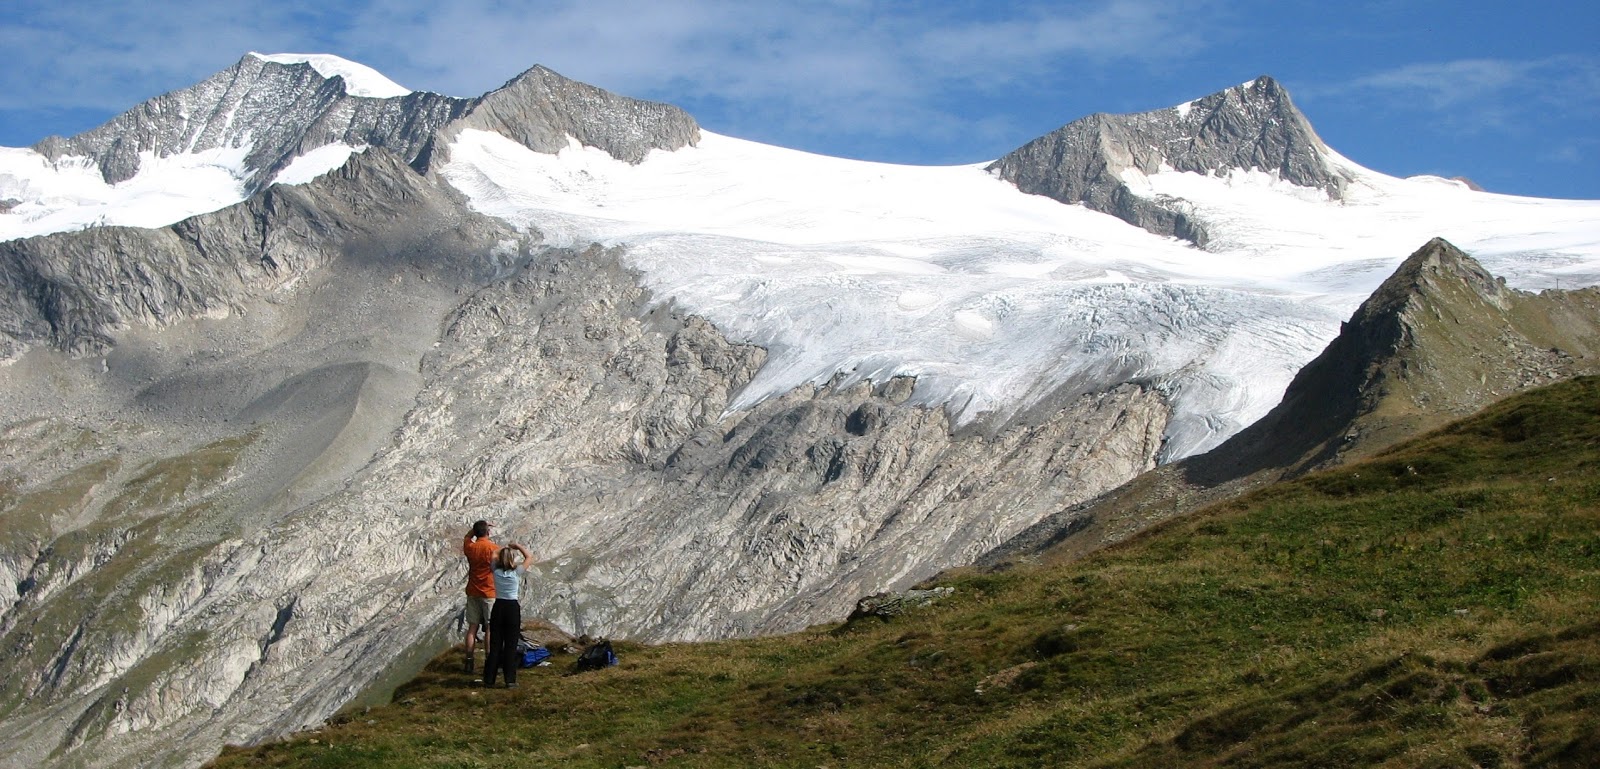 25 Kata Kata Menikmati Alam Yang Menginspirasi Basecamp Para Pendaki